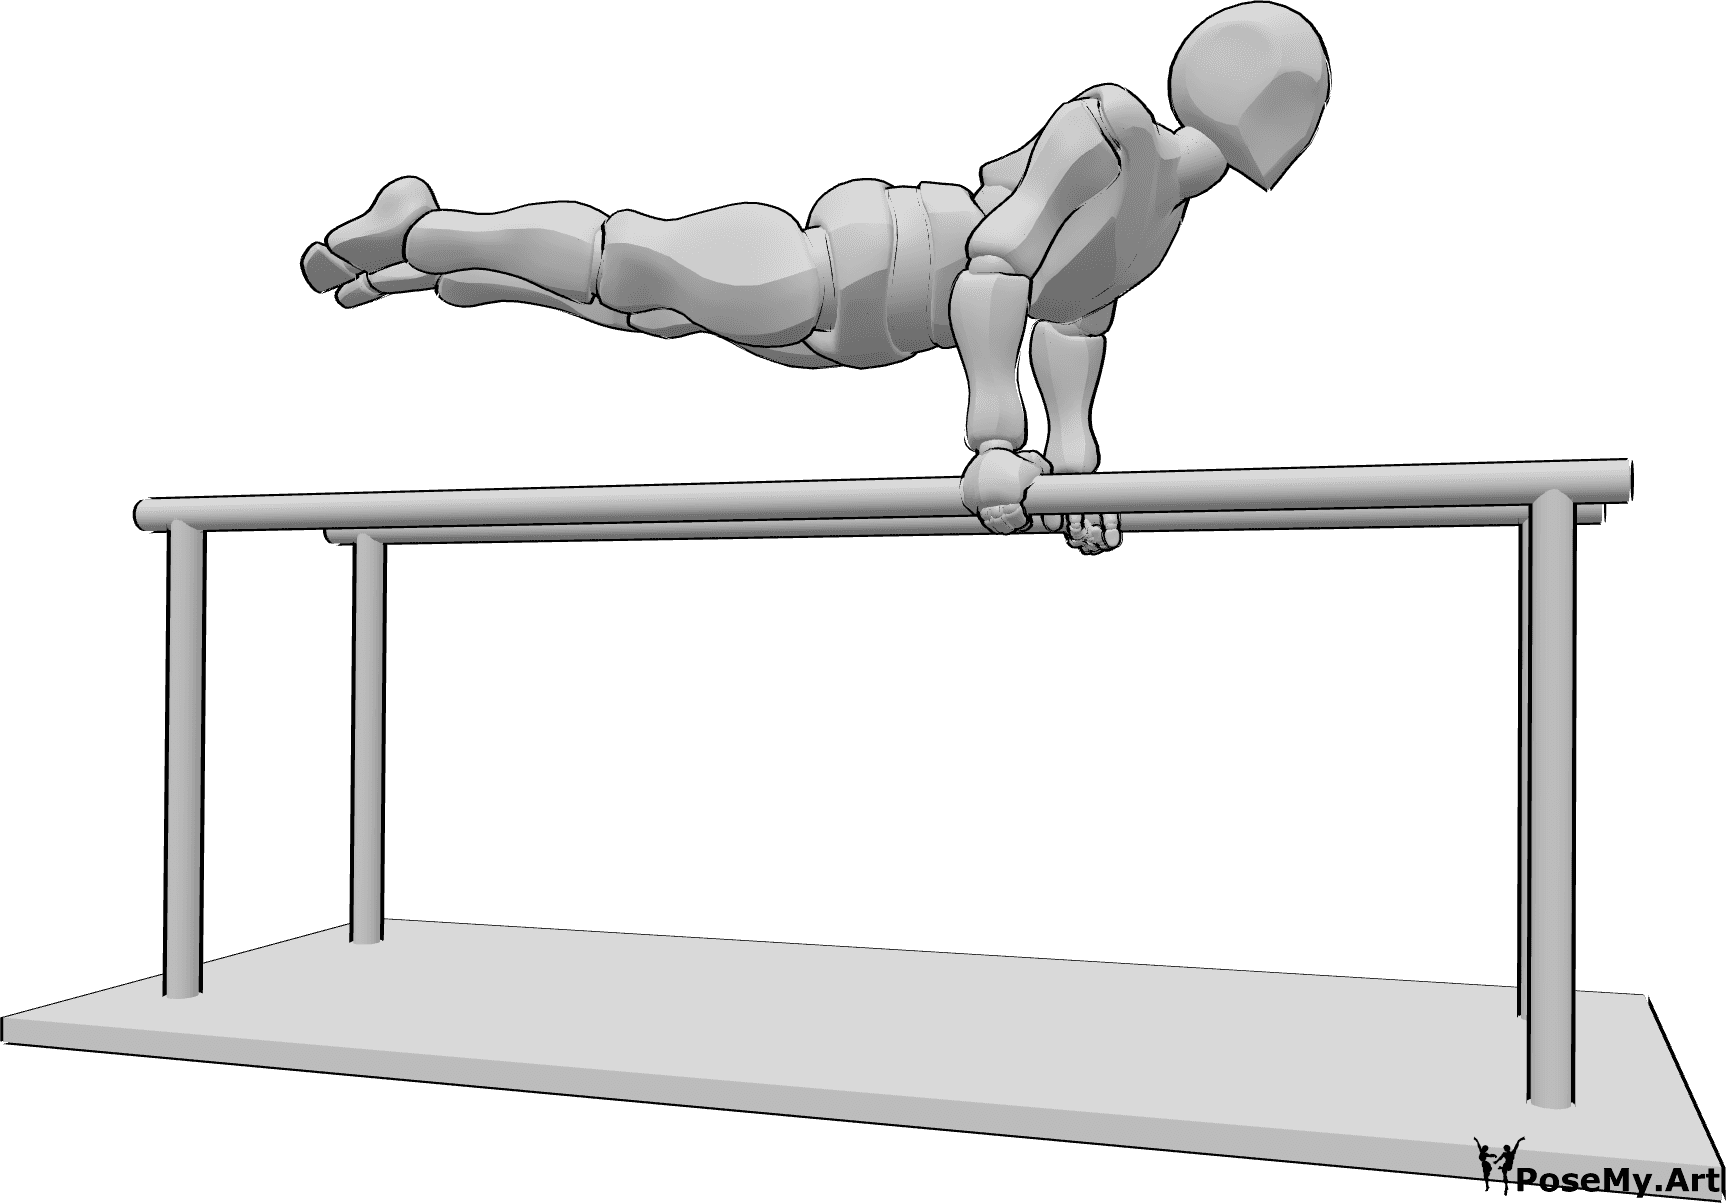 Referência de poses- Pose de apoio nas barras paralelas - O homem está a fazer ginástica nas barras paralelas, mantendo o corpo direito no ar, na horizontal